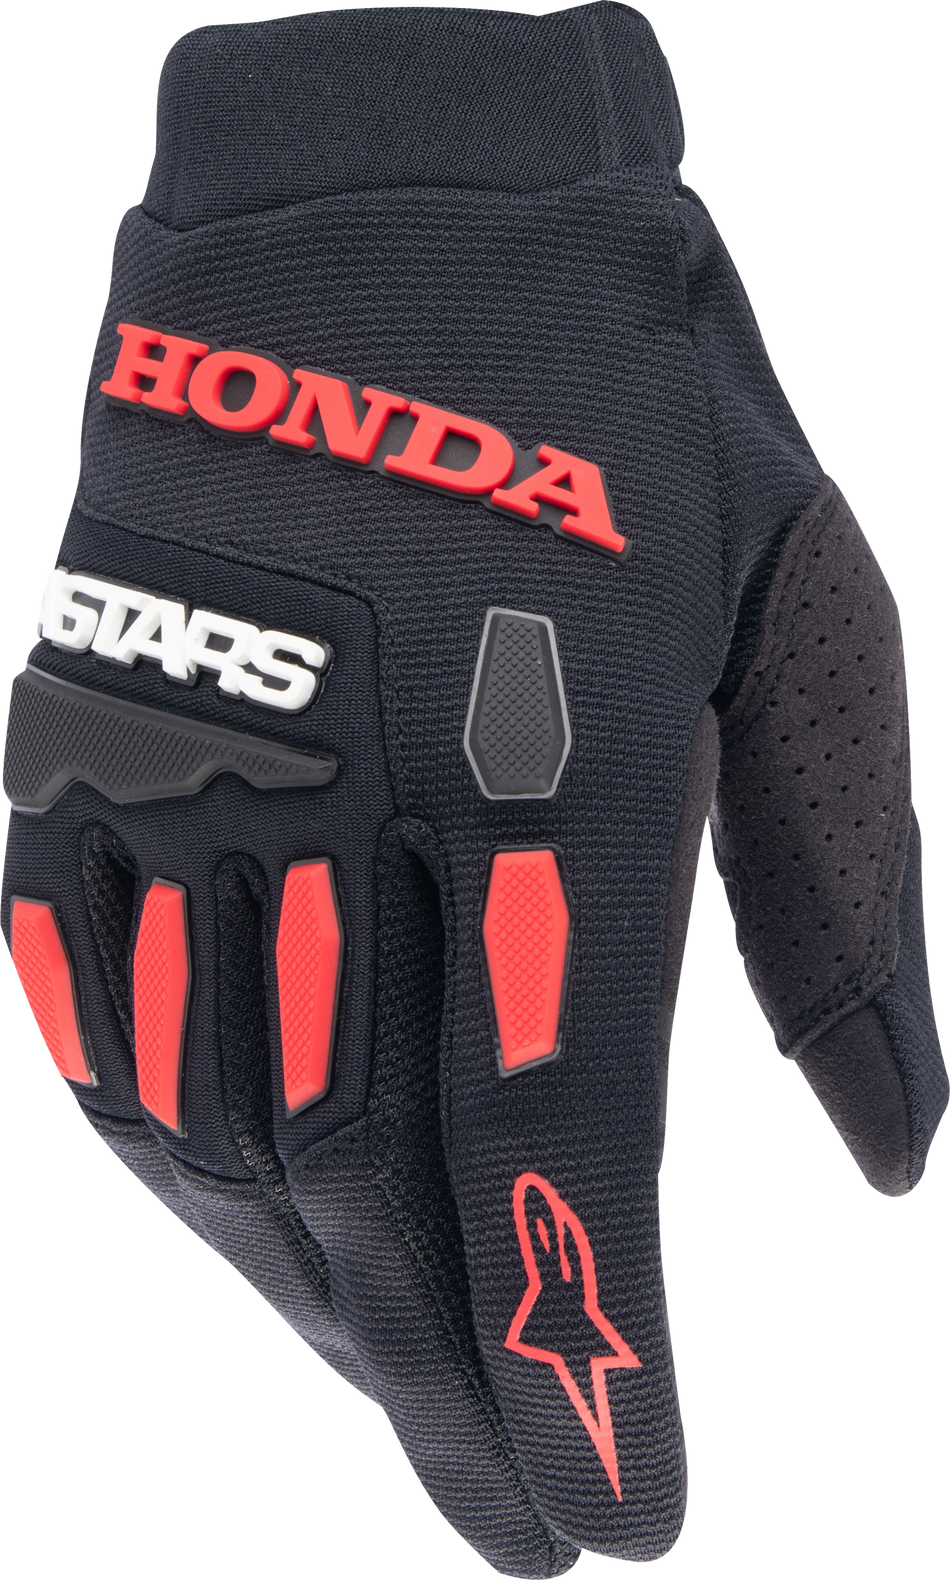 ALPINESTARS Honda Full Bore Gloves Black/Bright Red 4x 3563823-1303-4XL